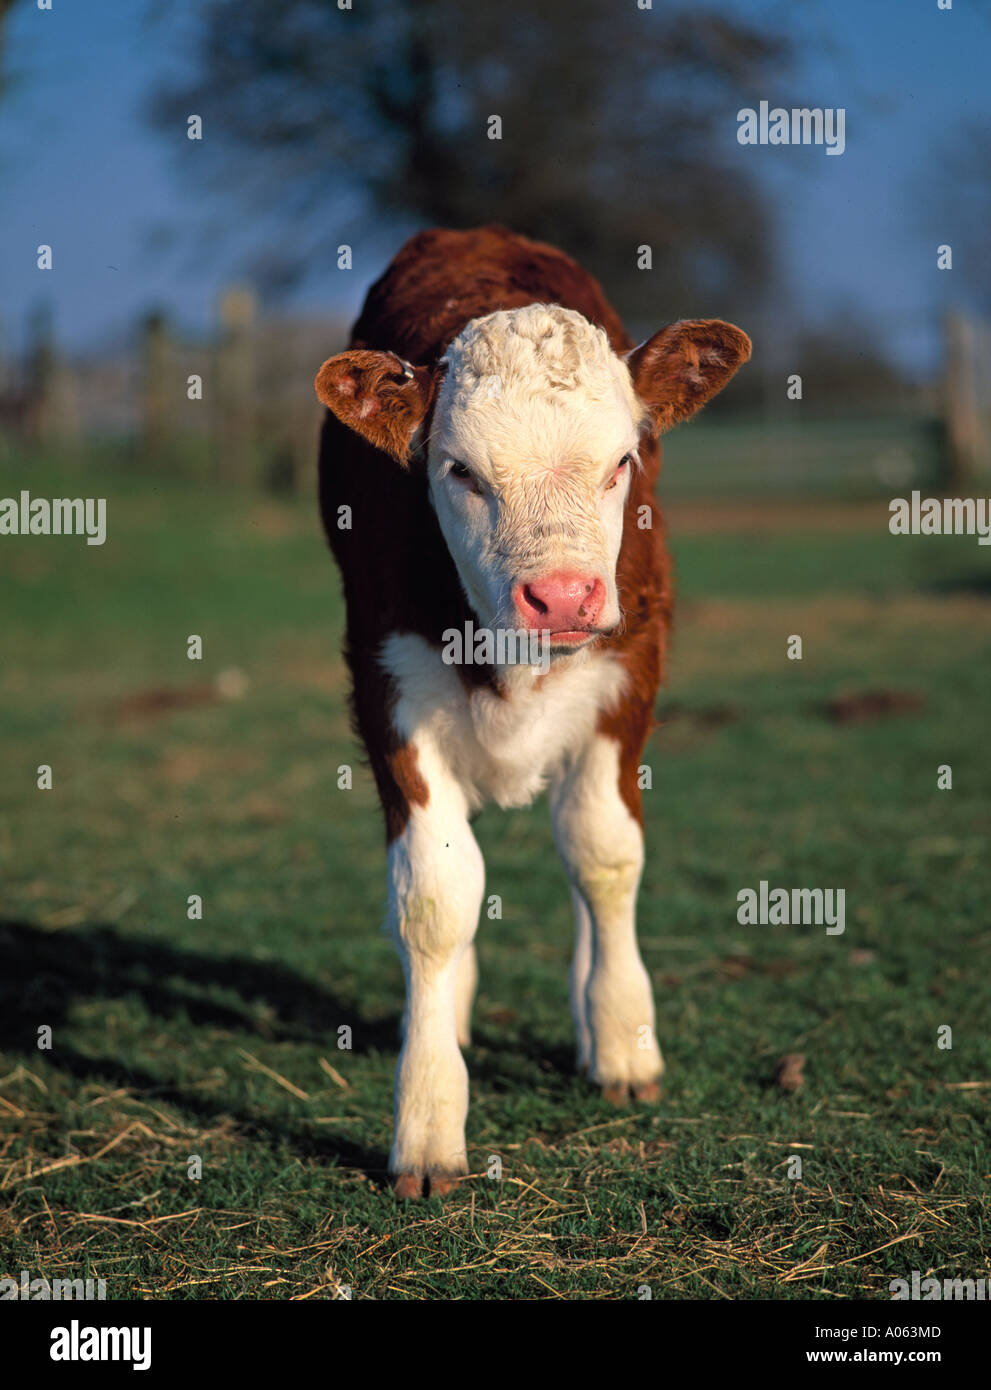 Los mamíferos, el ganado, la pantorrilla Foto de stock